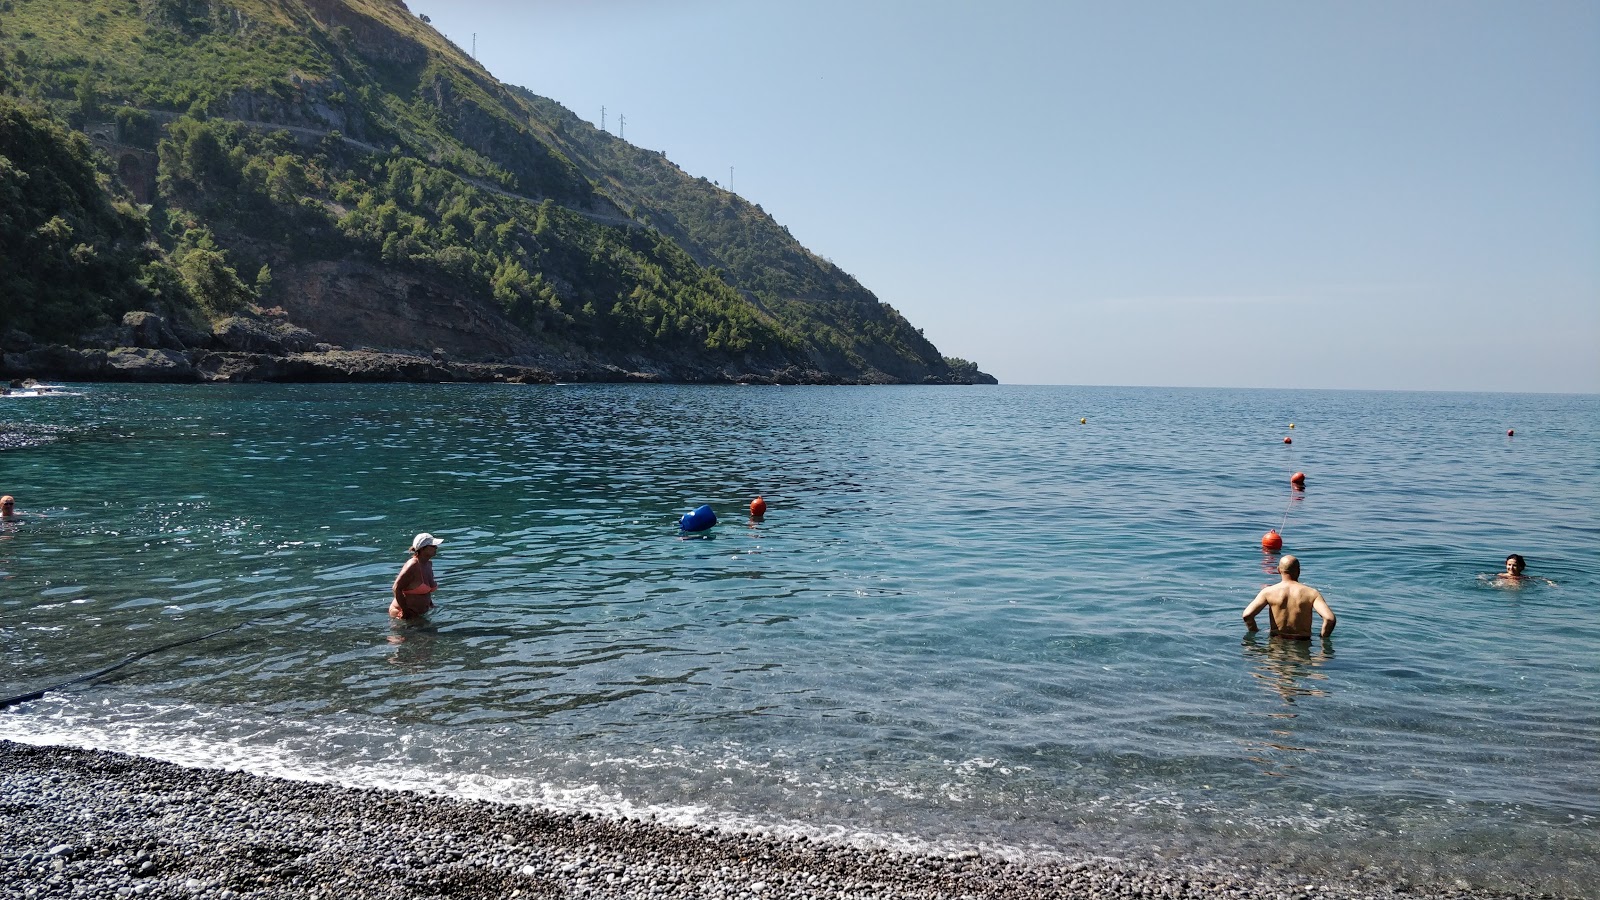 Foto von Spiaggia Portacquafridda befindet sich in natürlicher umgebung